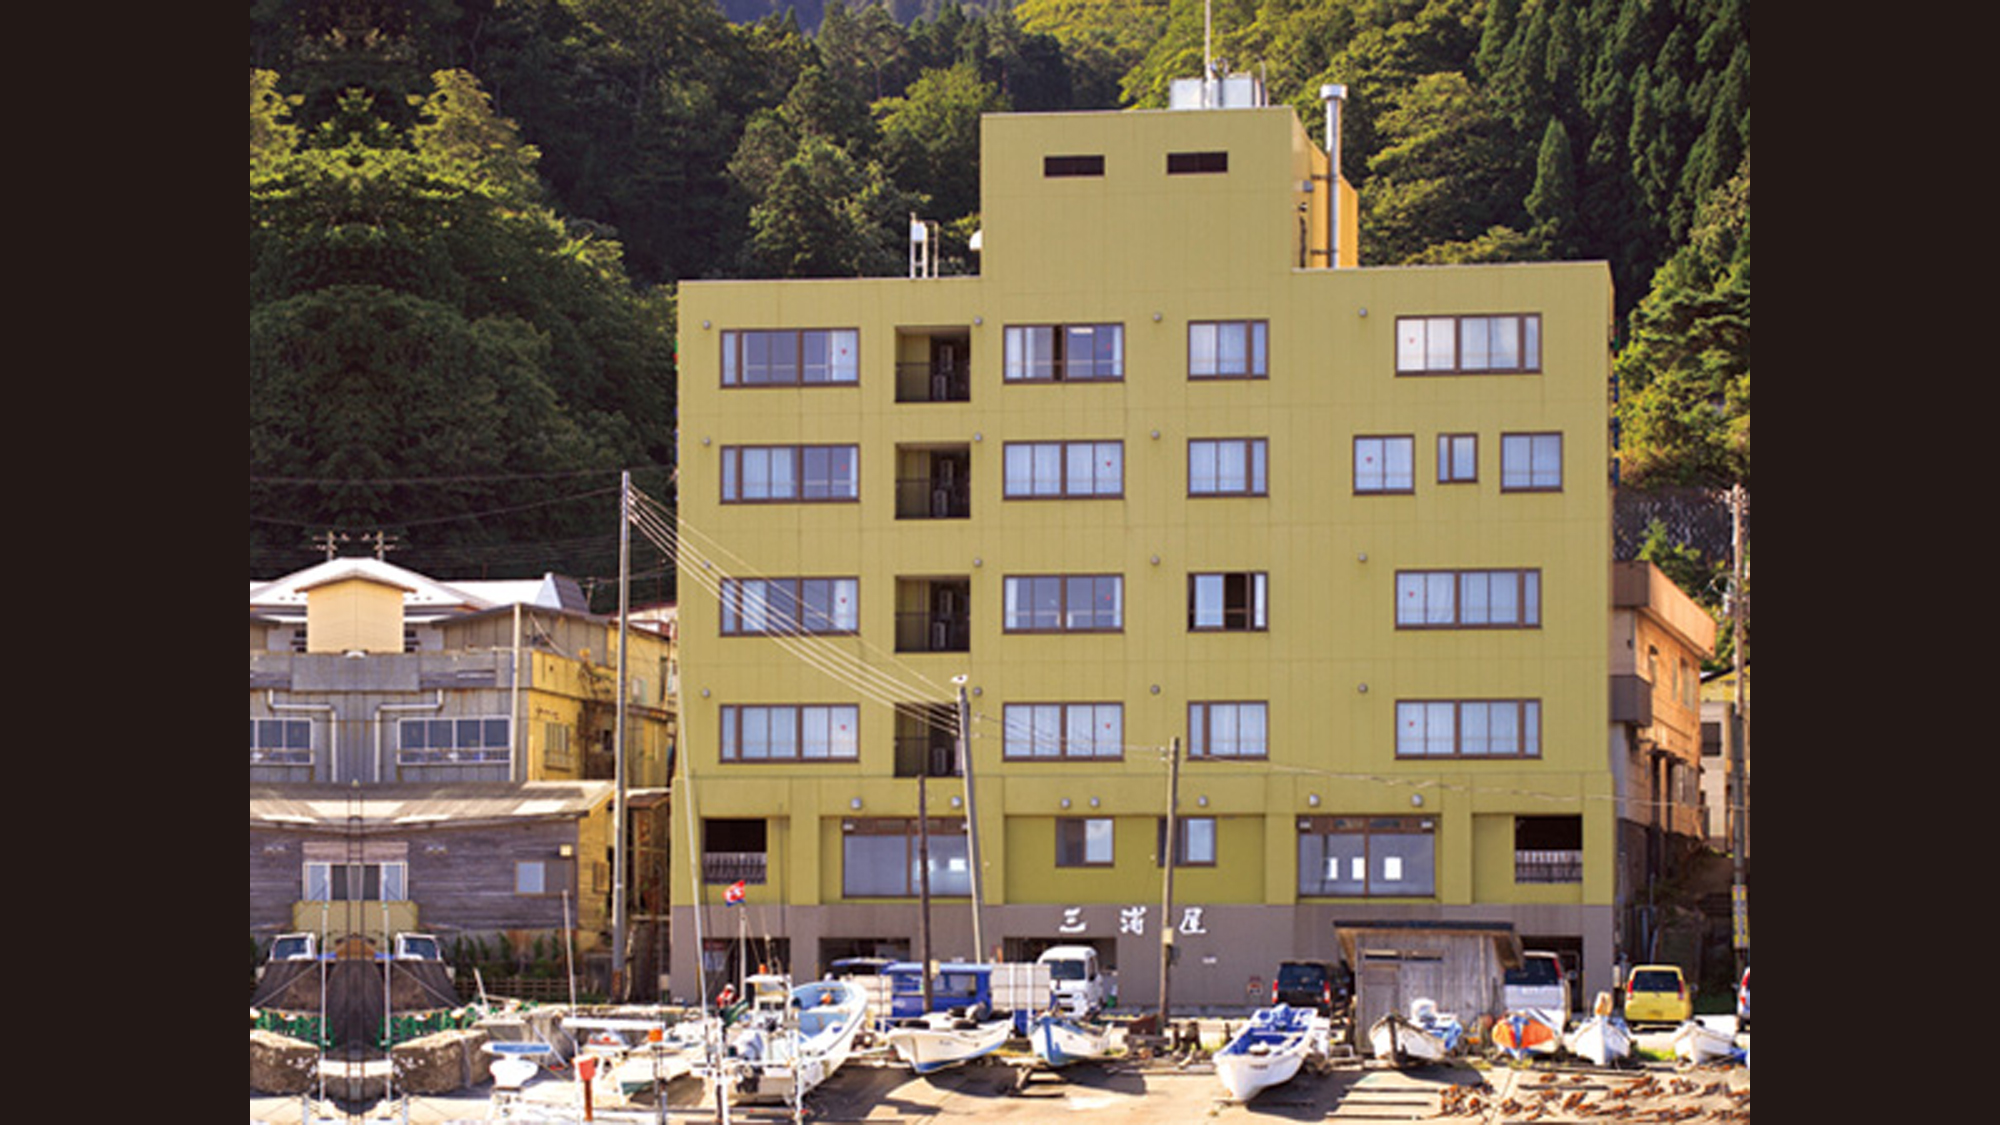 Shimofuro Kanko Hotel Miuraya